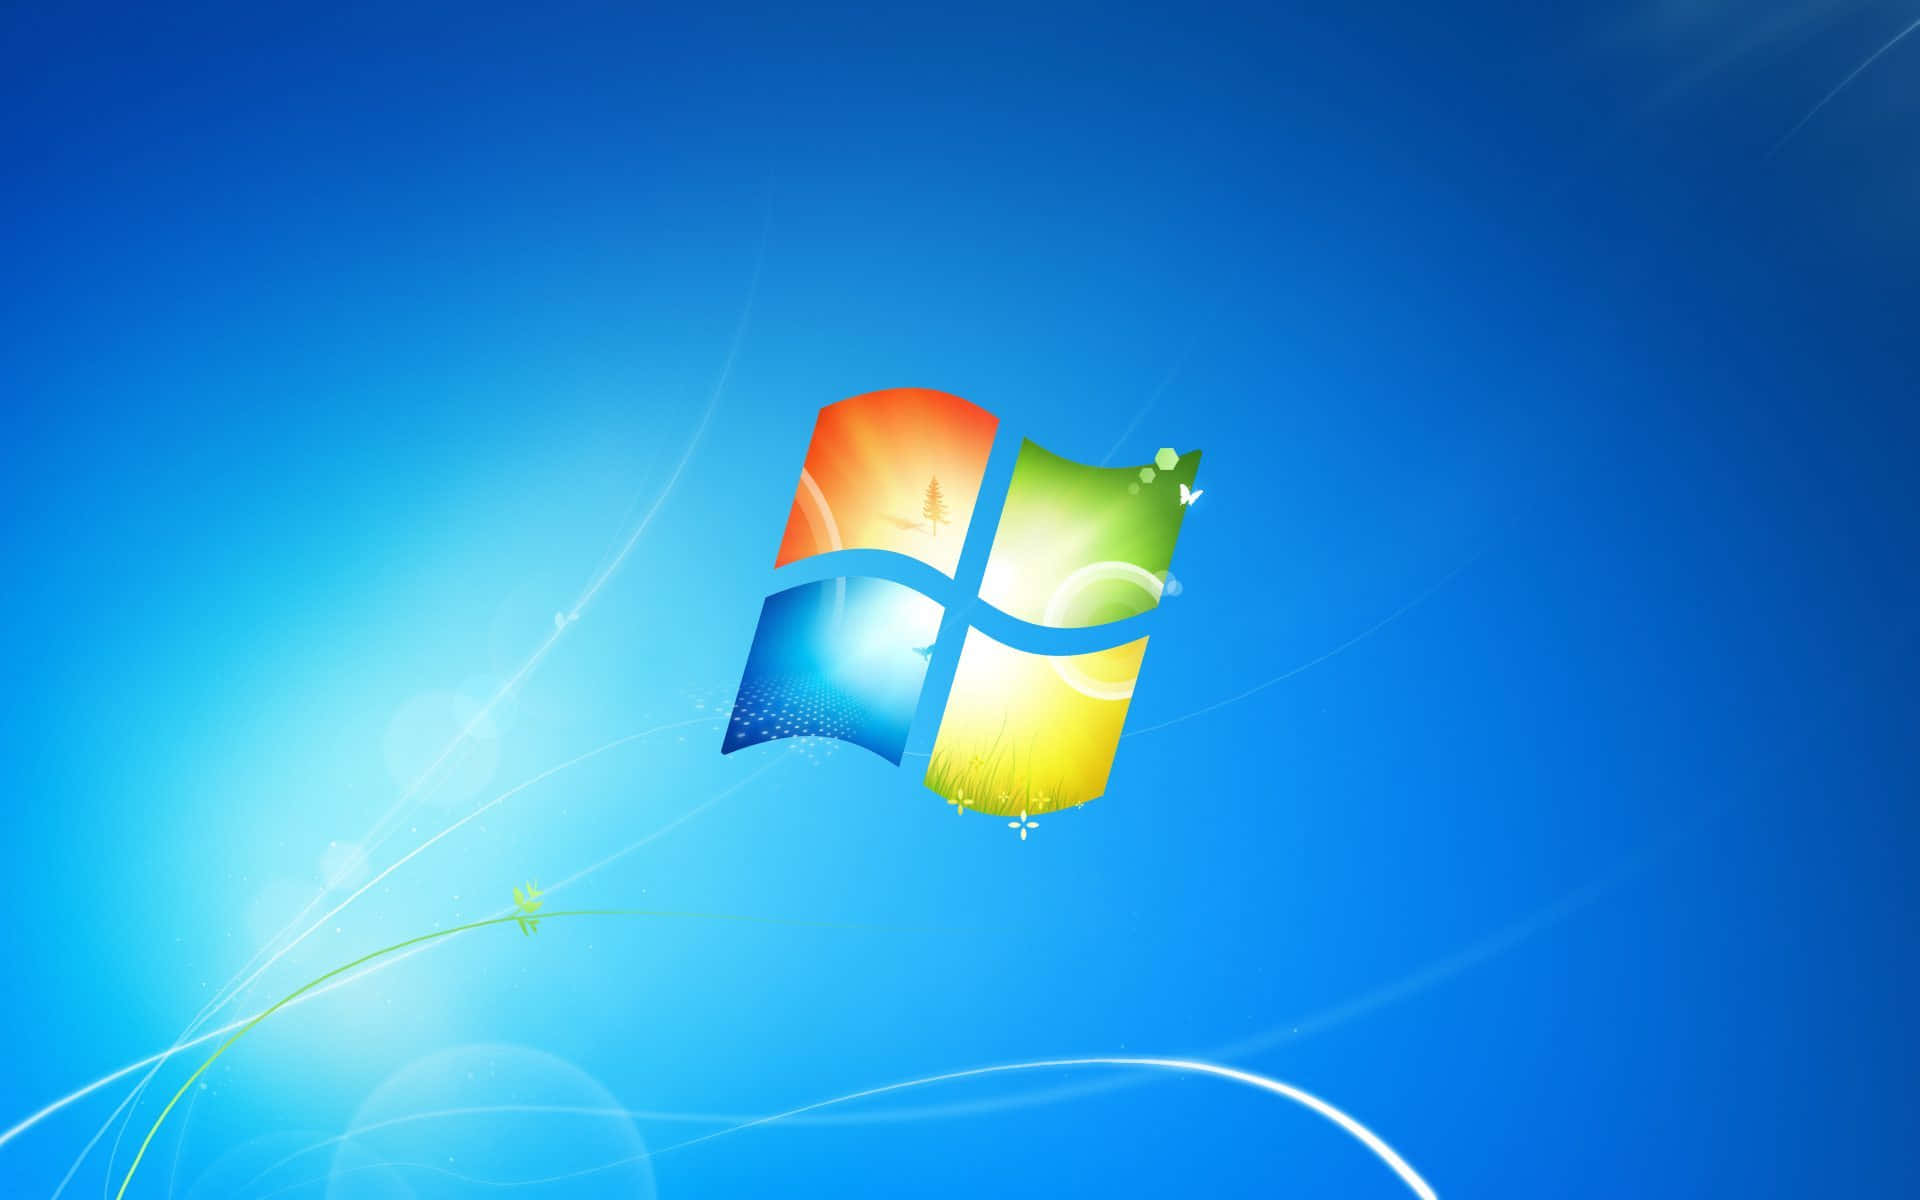 Blue Windows 7 Harmony Background